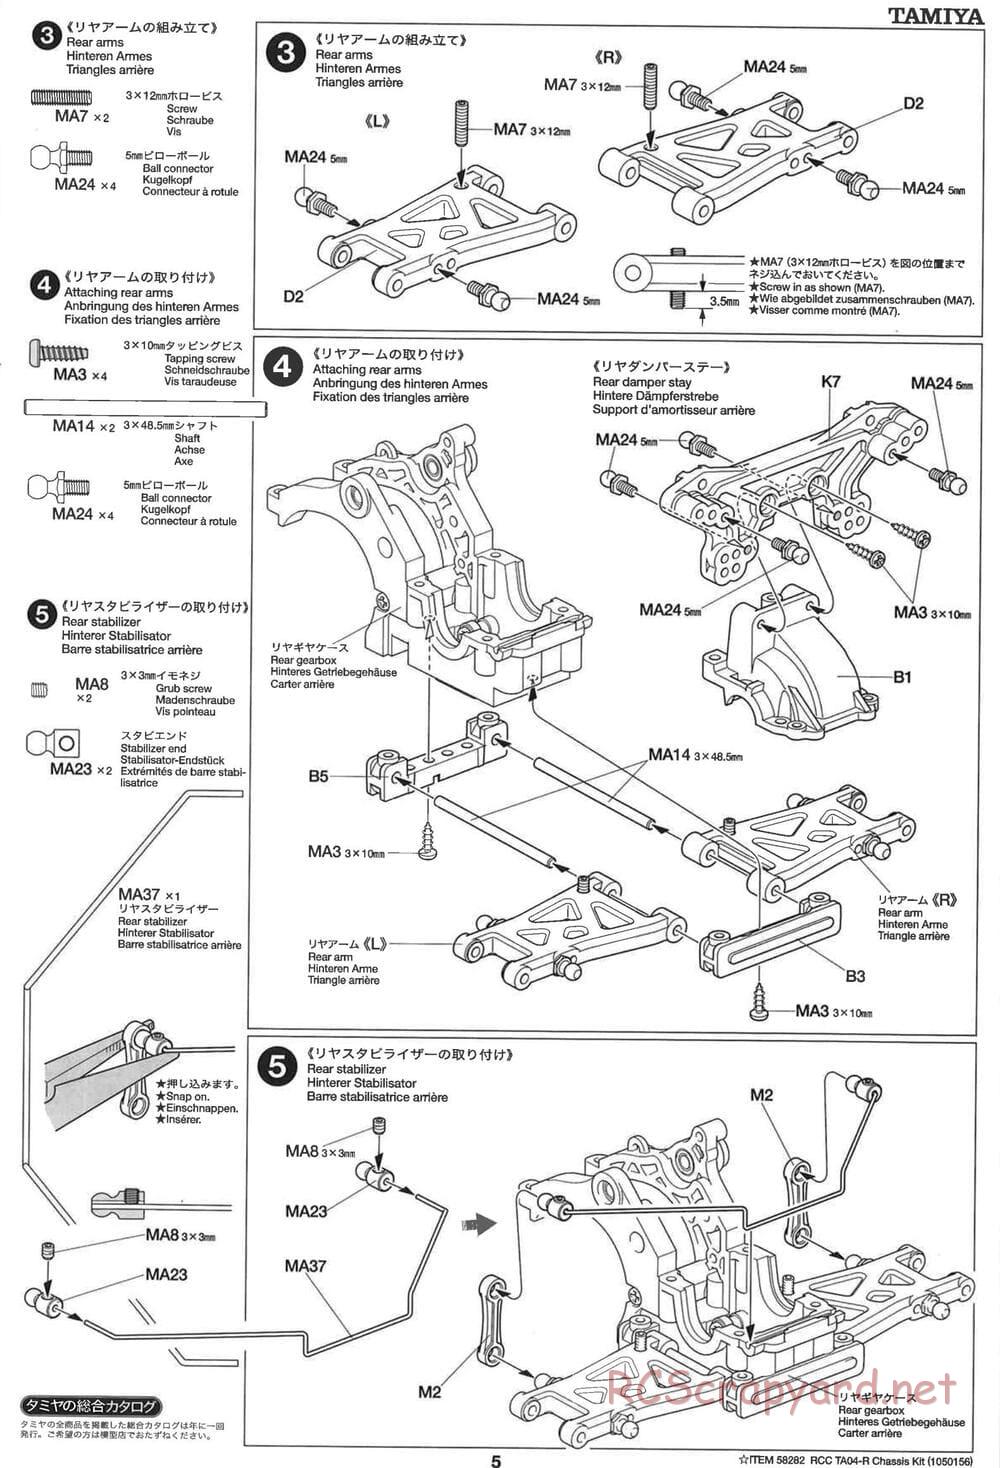 Tamiya - TA-04R Chassis - Manual - Page 5